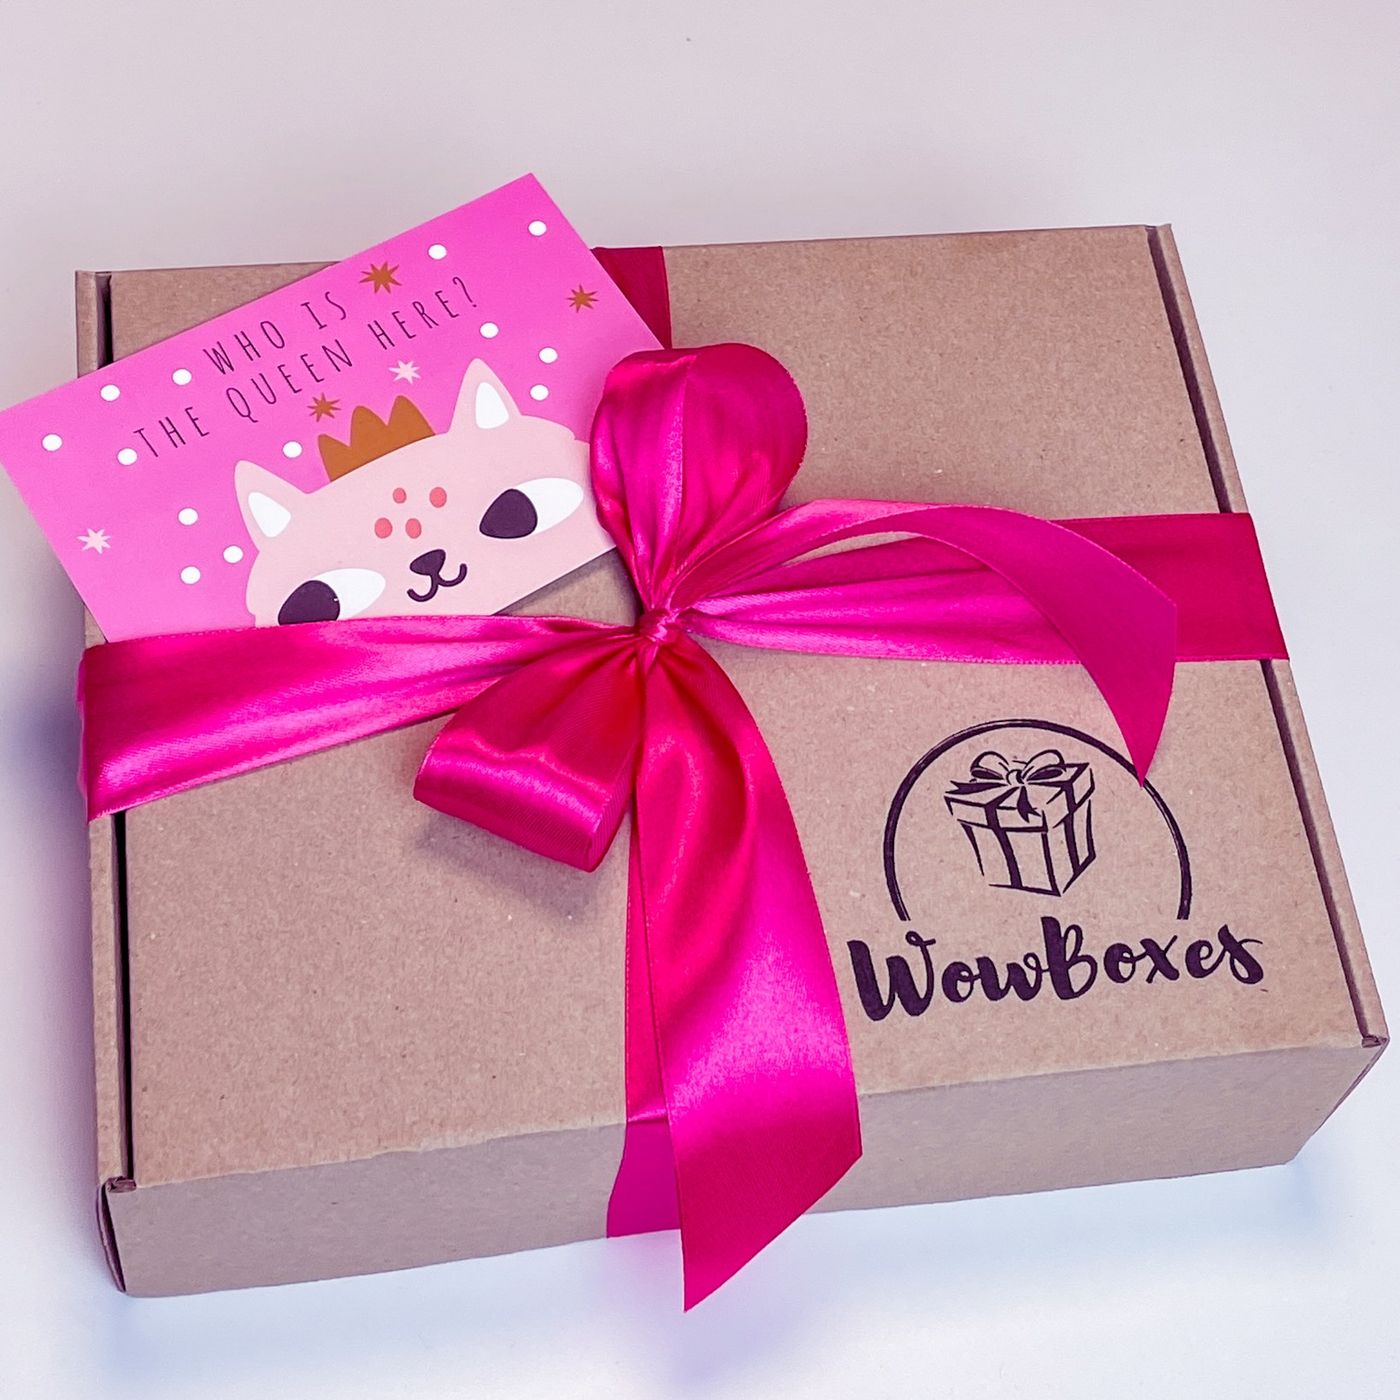 Подарочный бокс для девушки Wow boxes "Бьюти бокс / Beauty box" №7